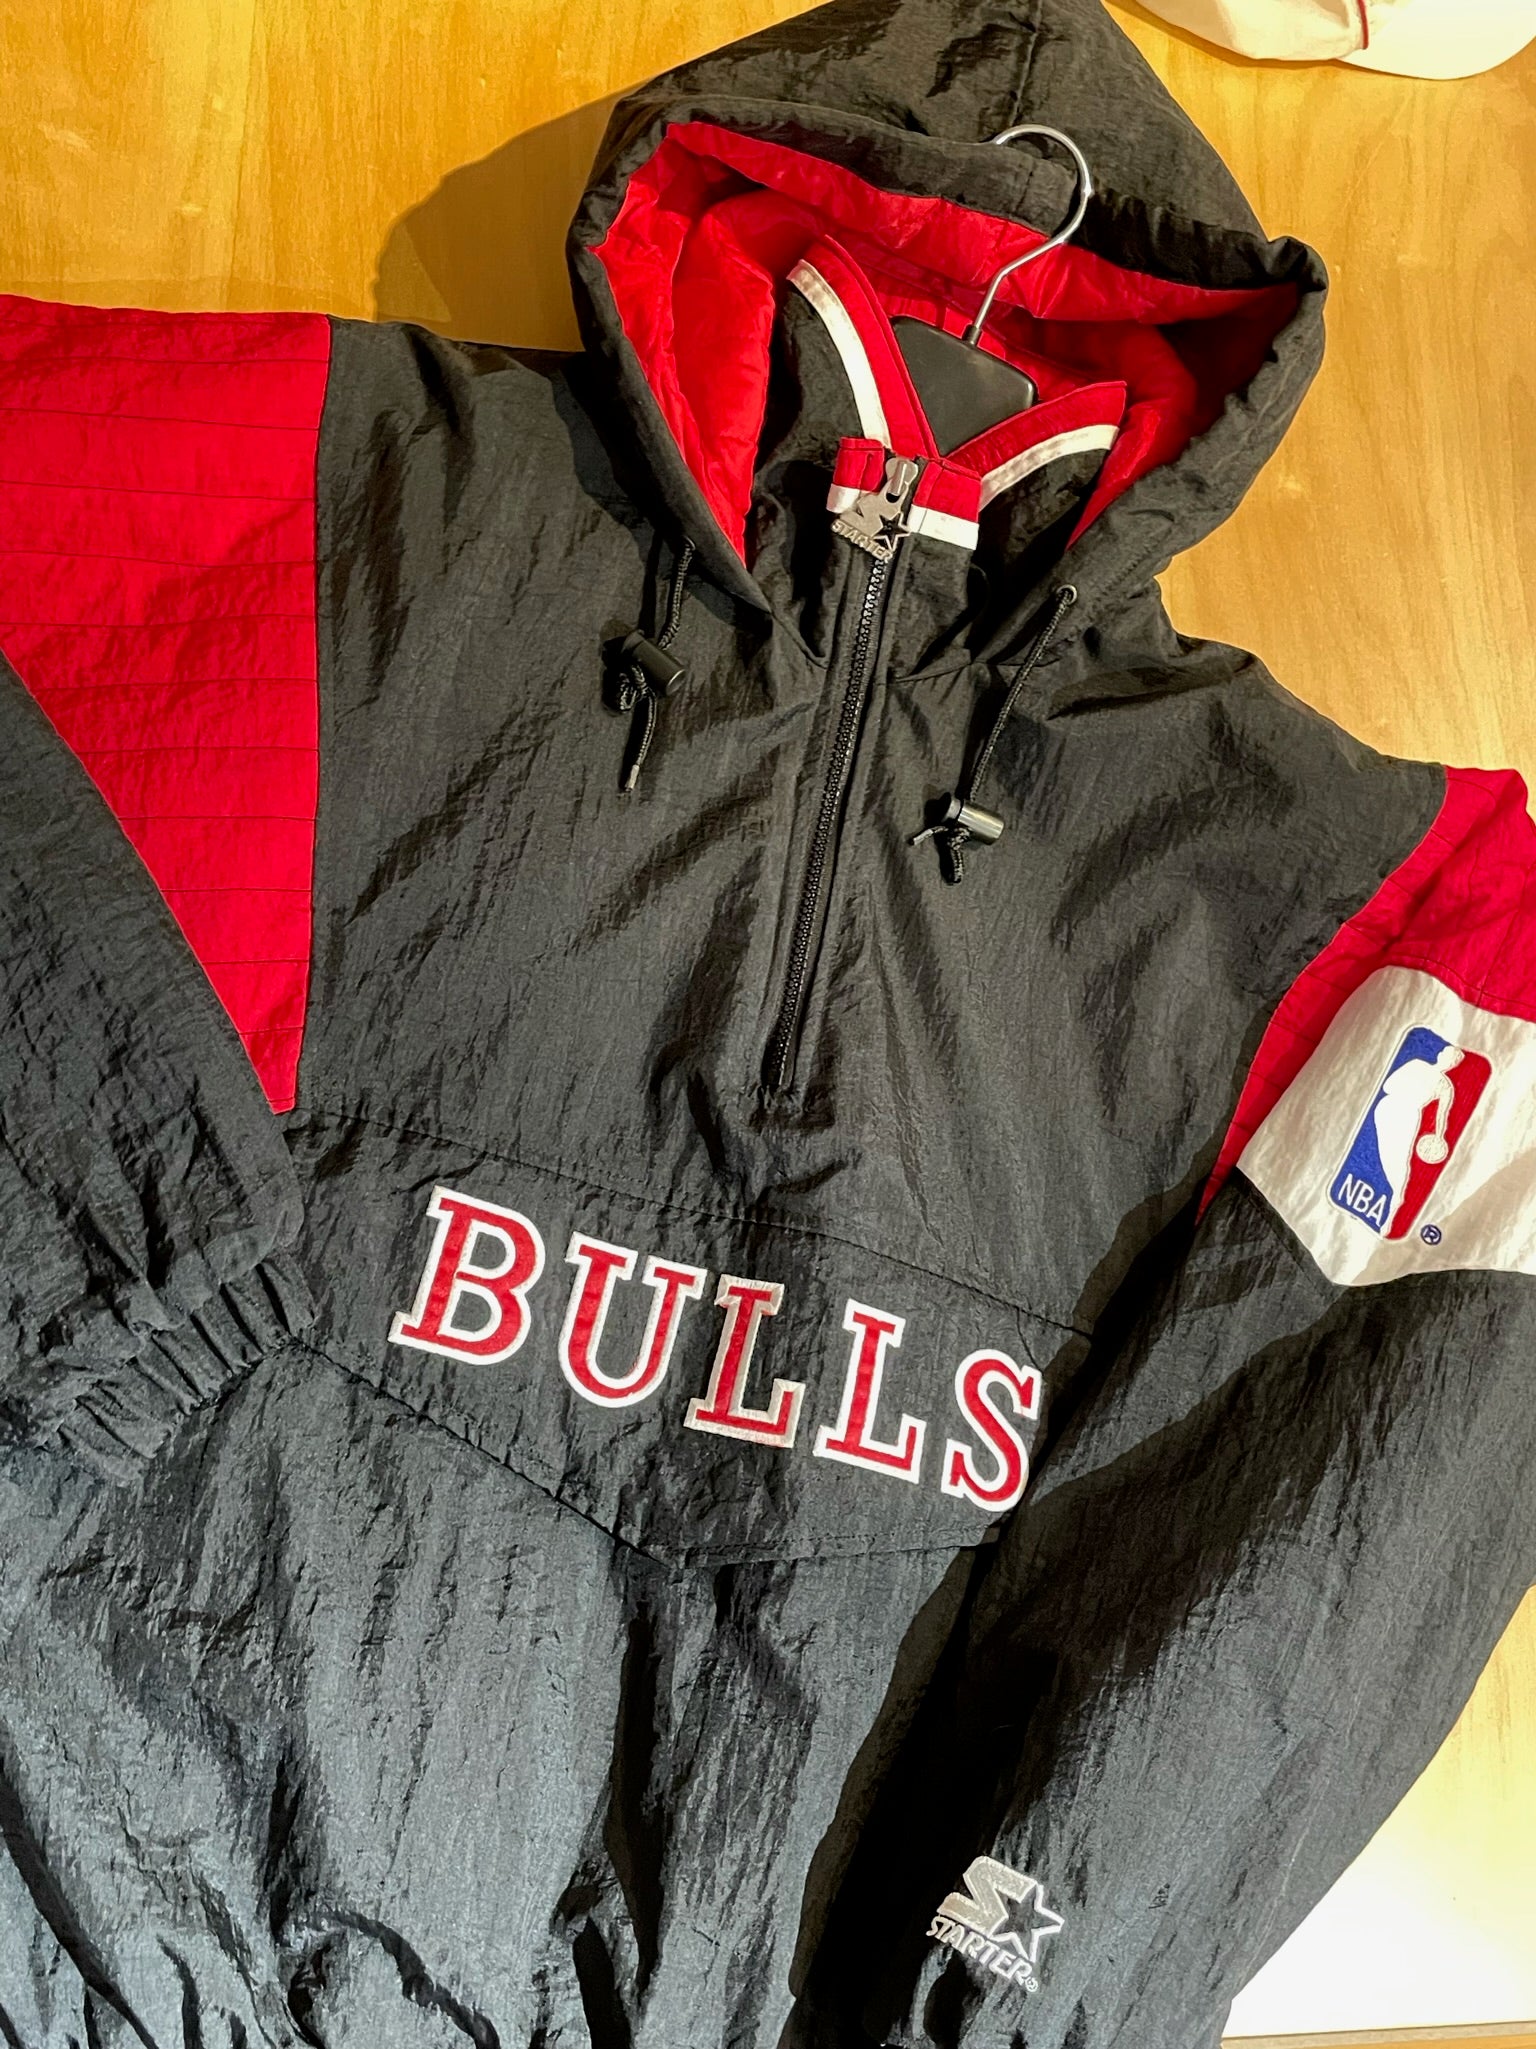 Vintage Chicago Bulls Pullover Starter Jacket (1990s)